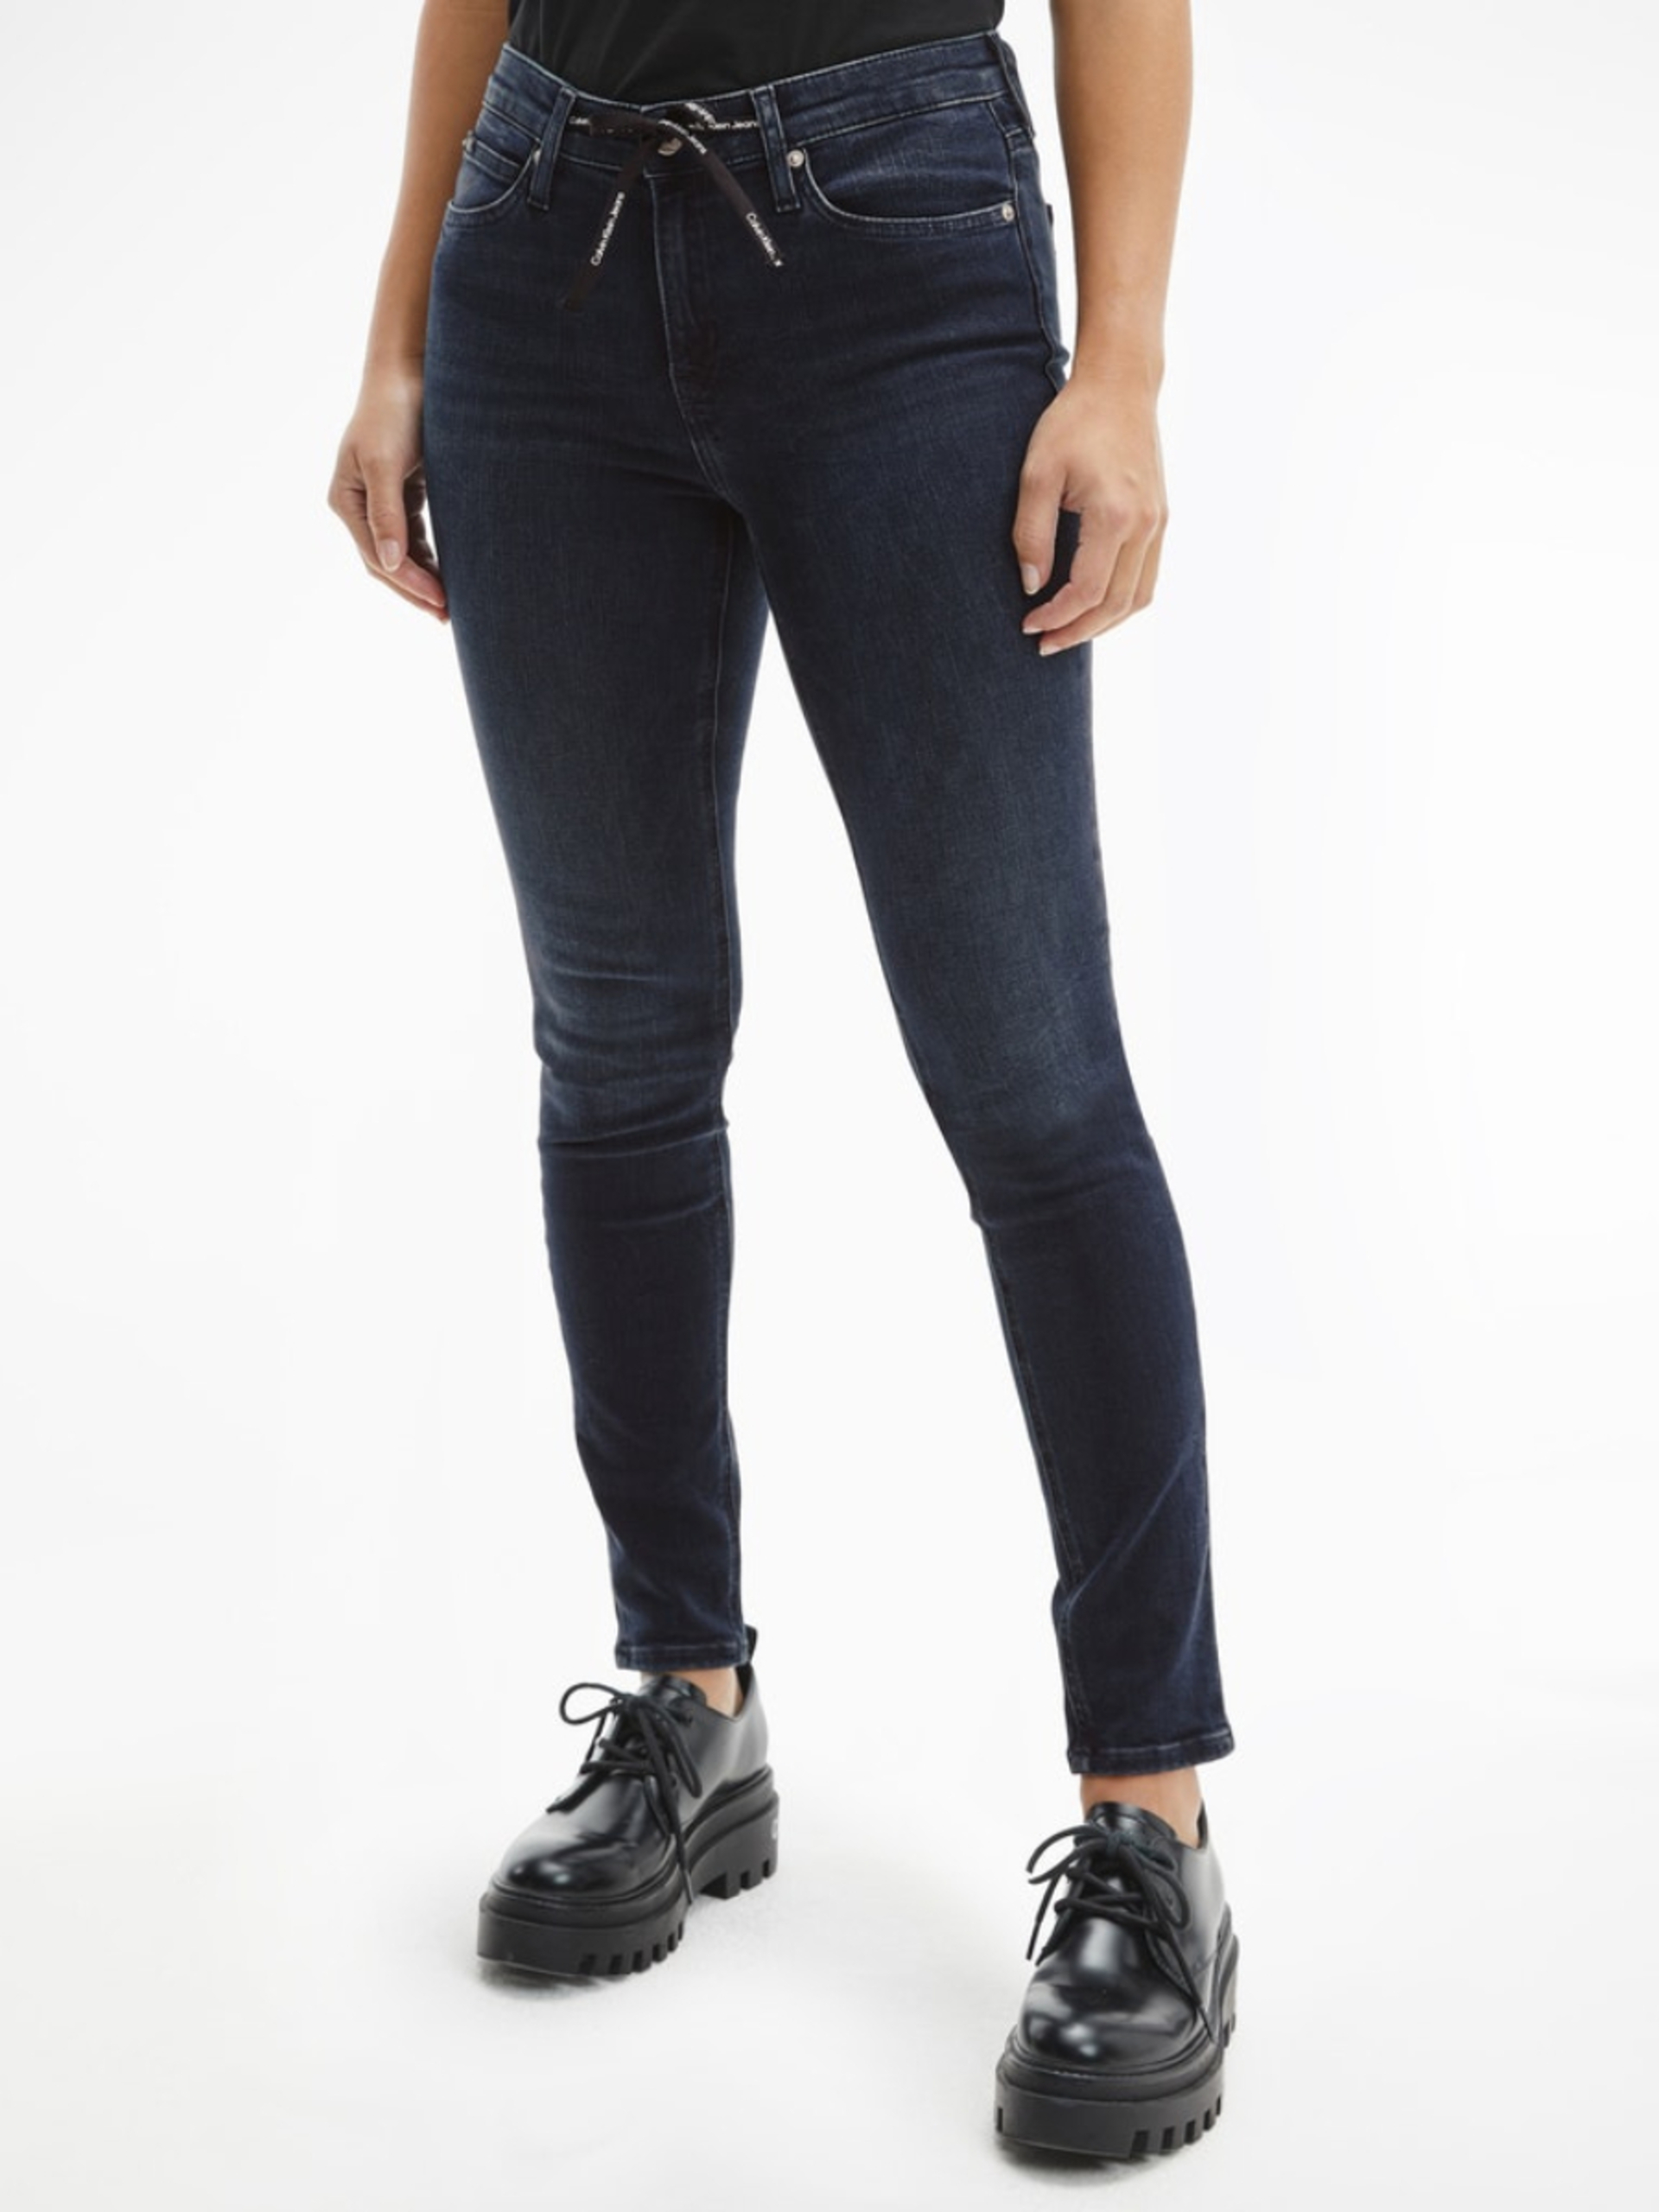 Calvin Klein dámské tmavě modré džíny - 27/32 (1BY)